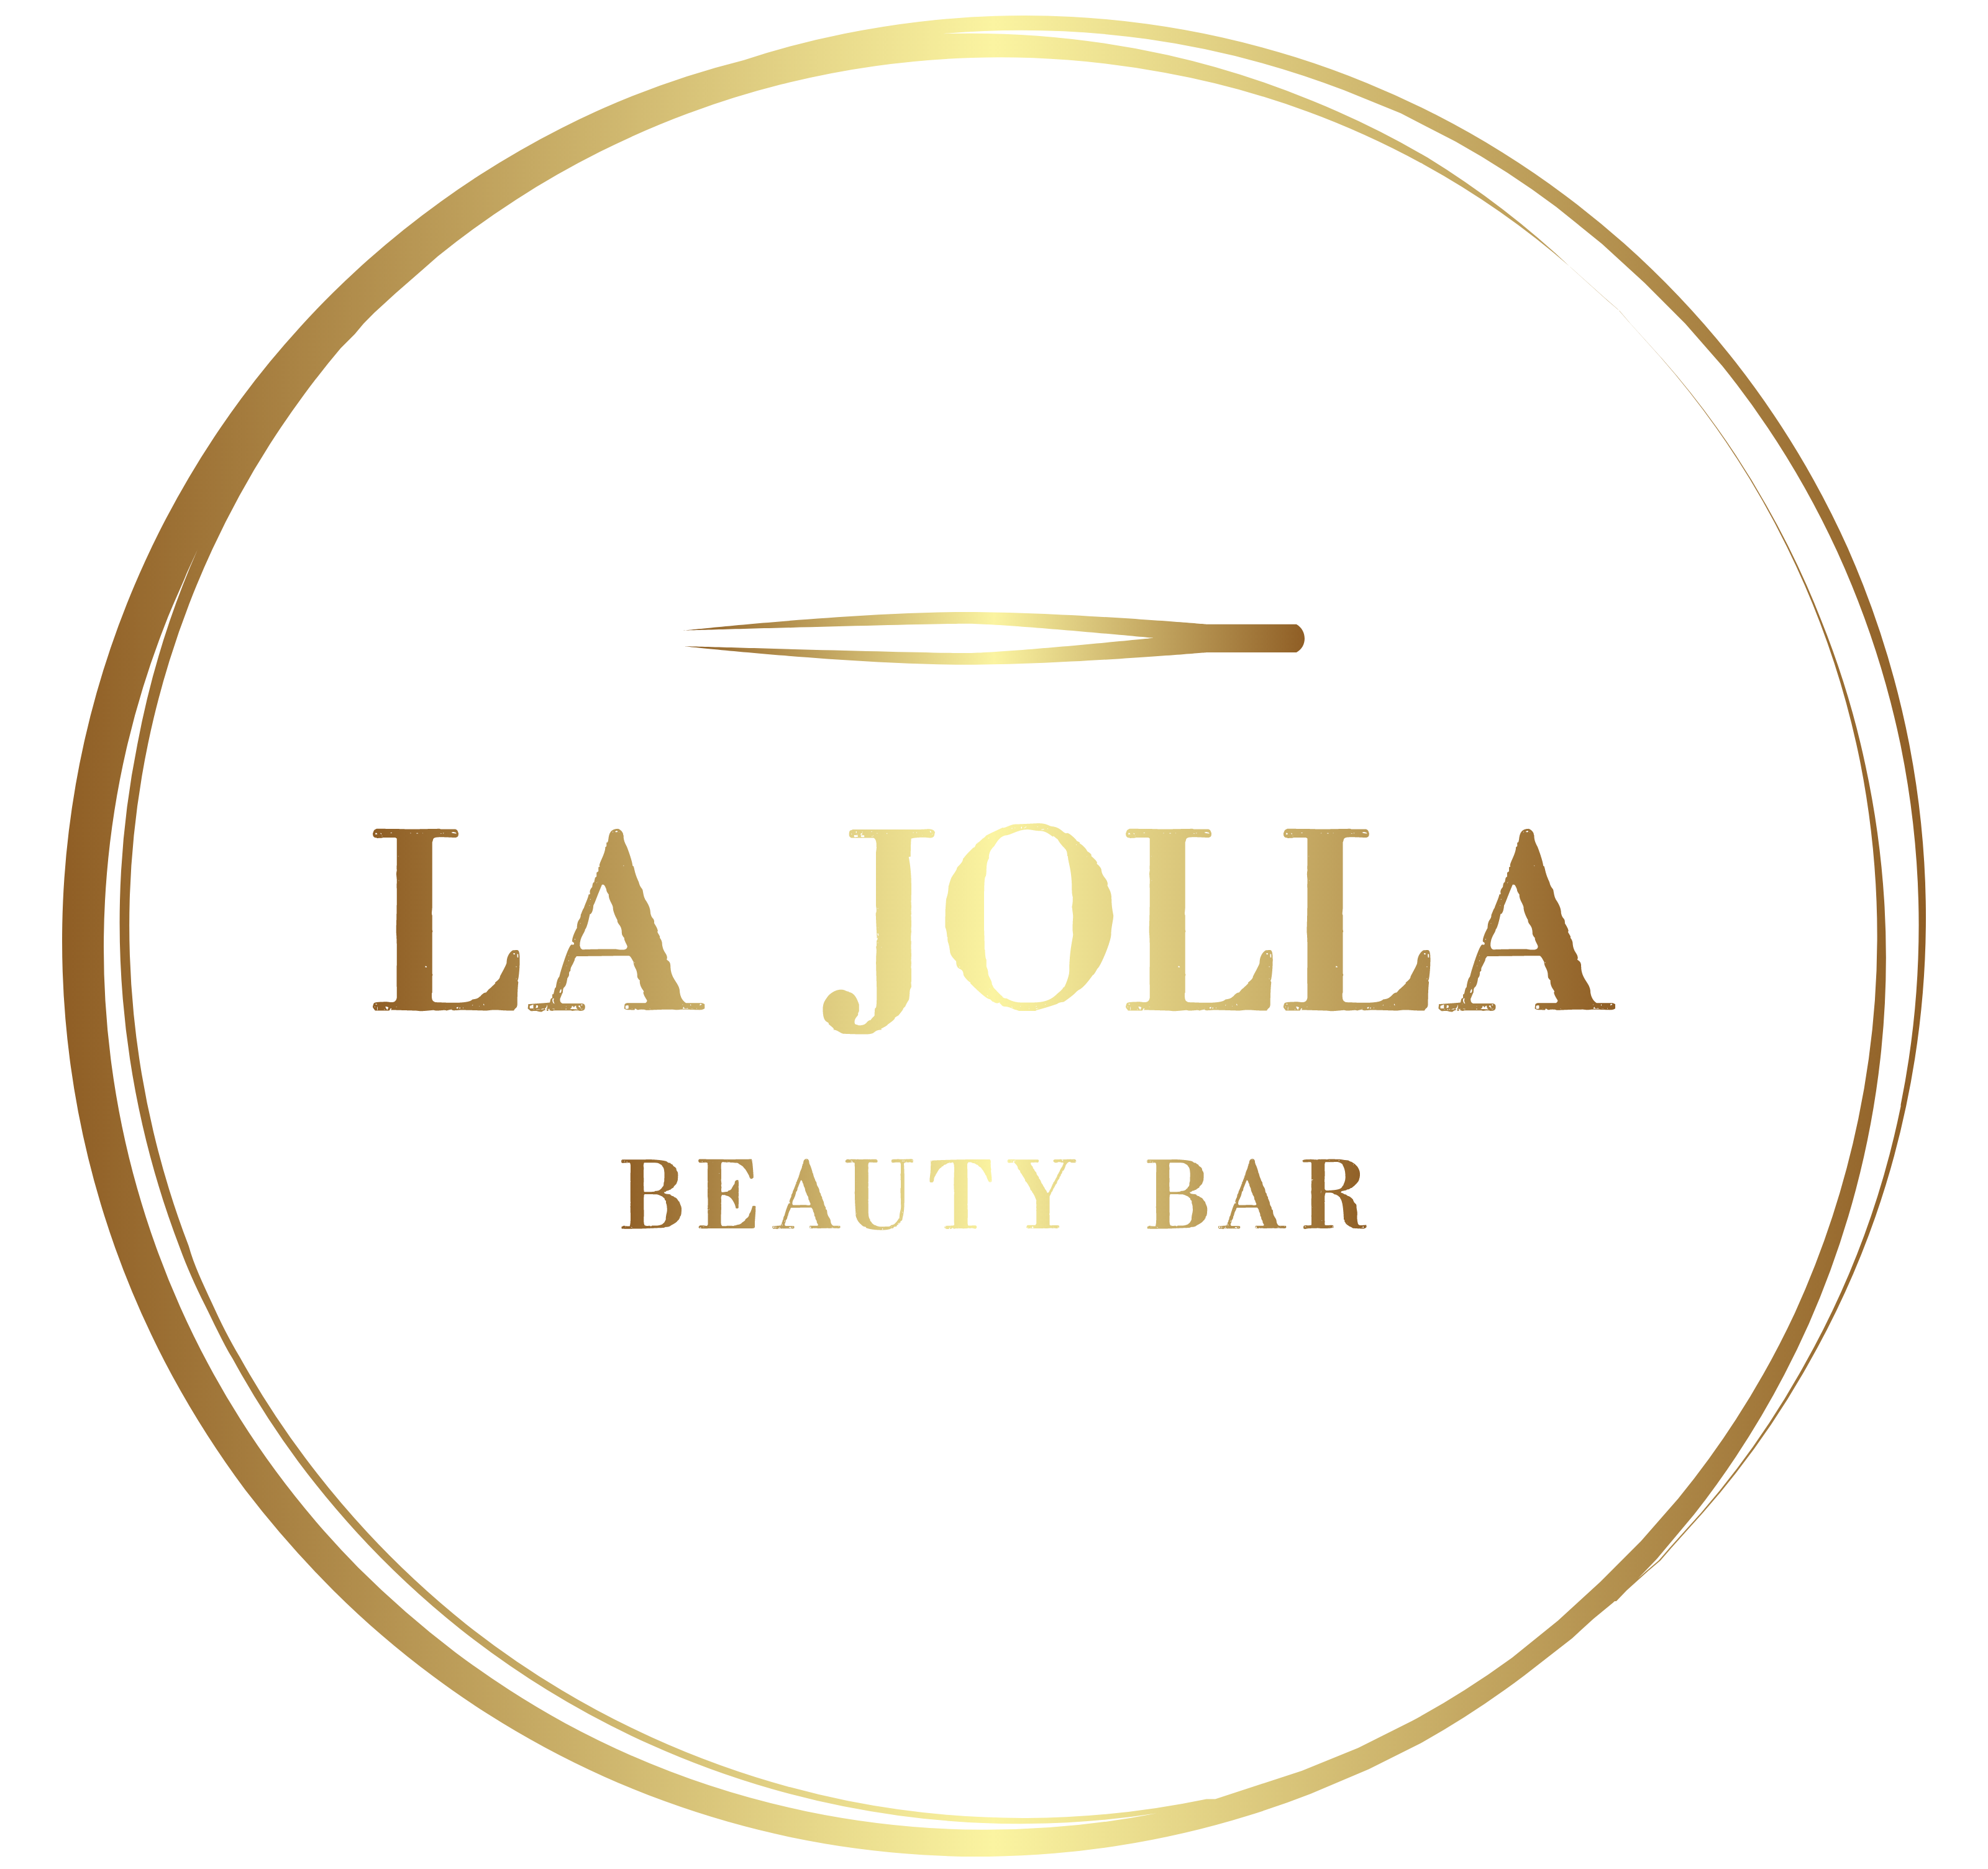 La Jolla Beauty Bar